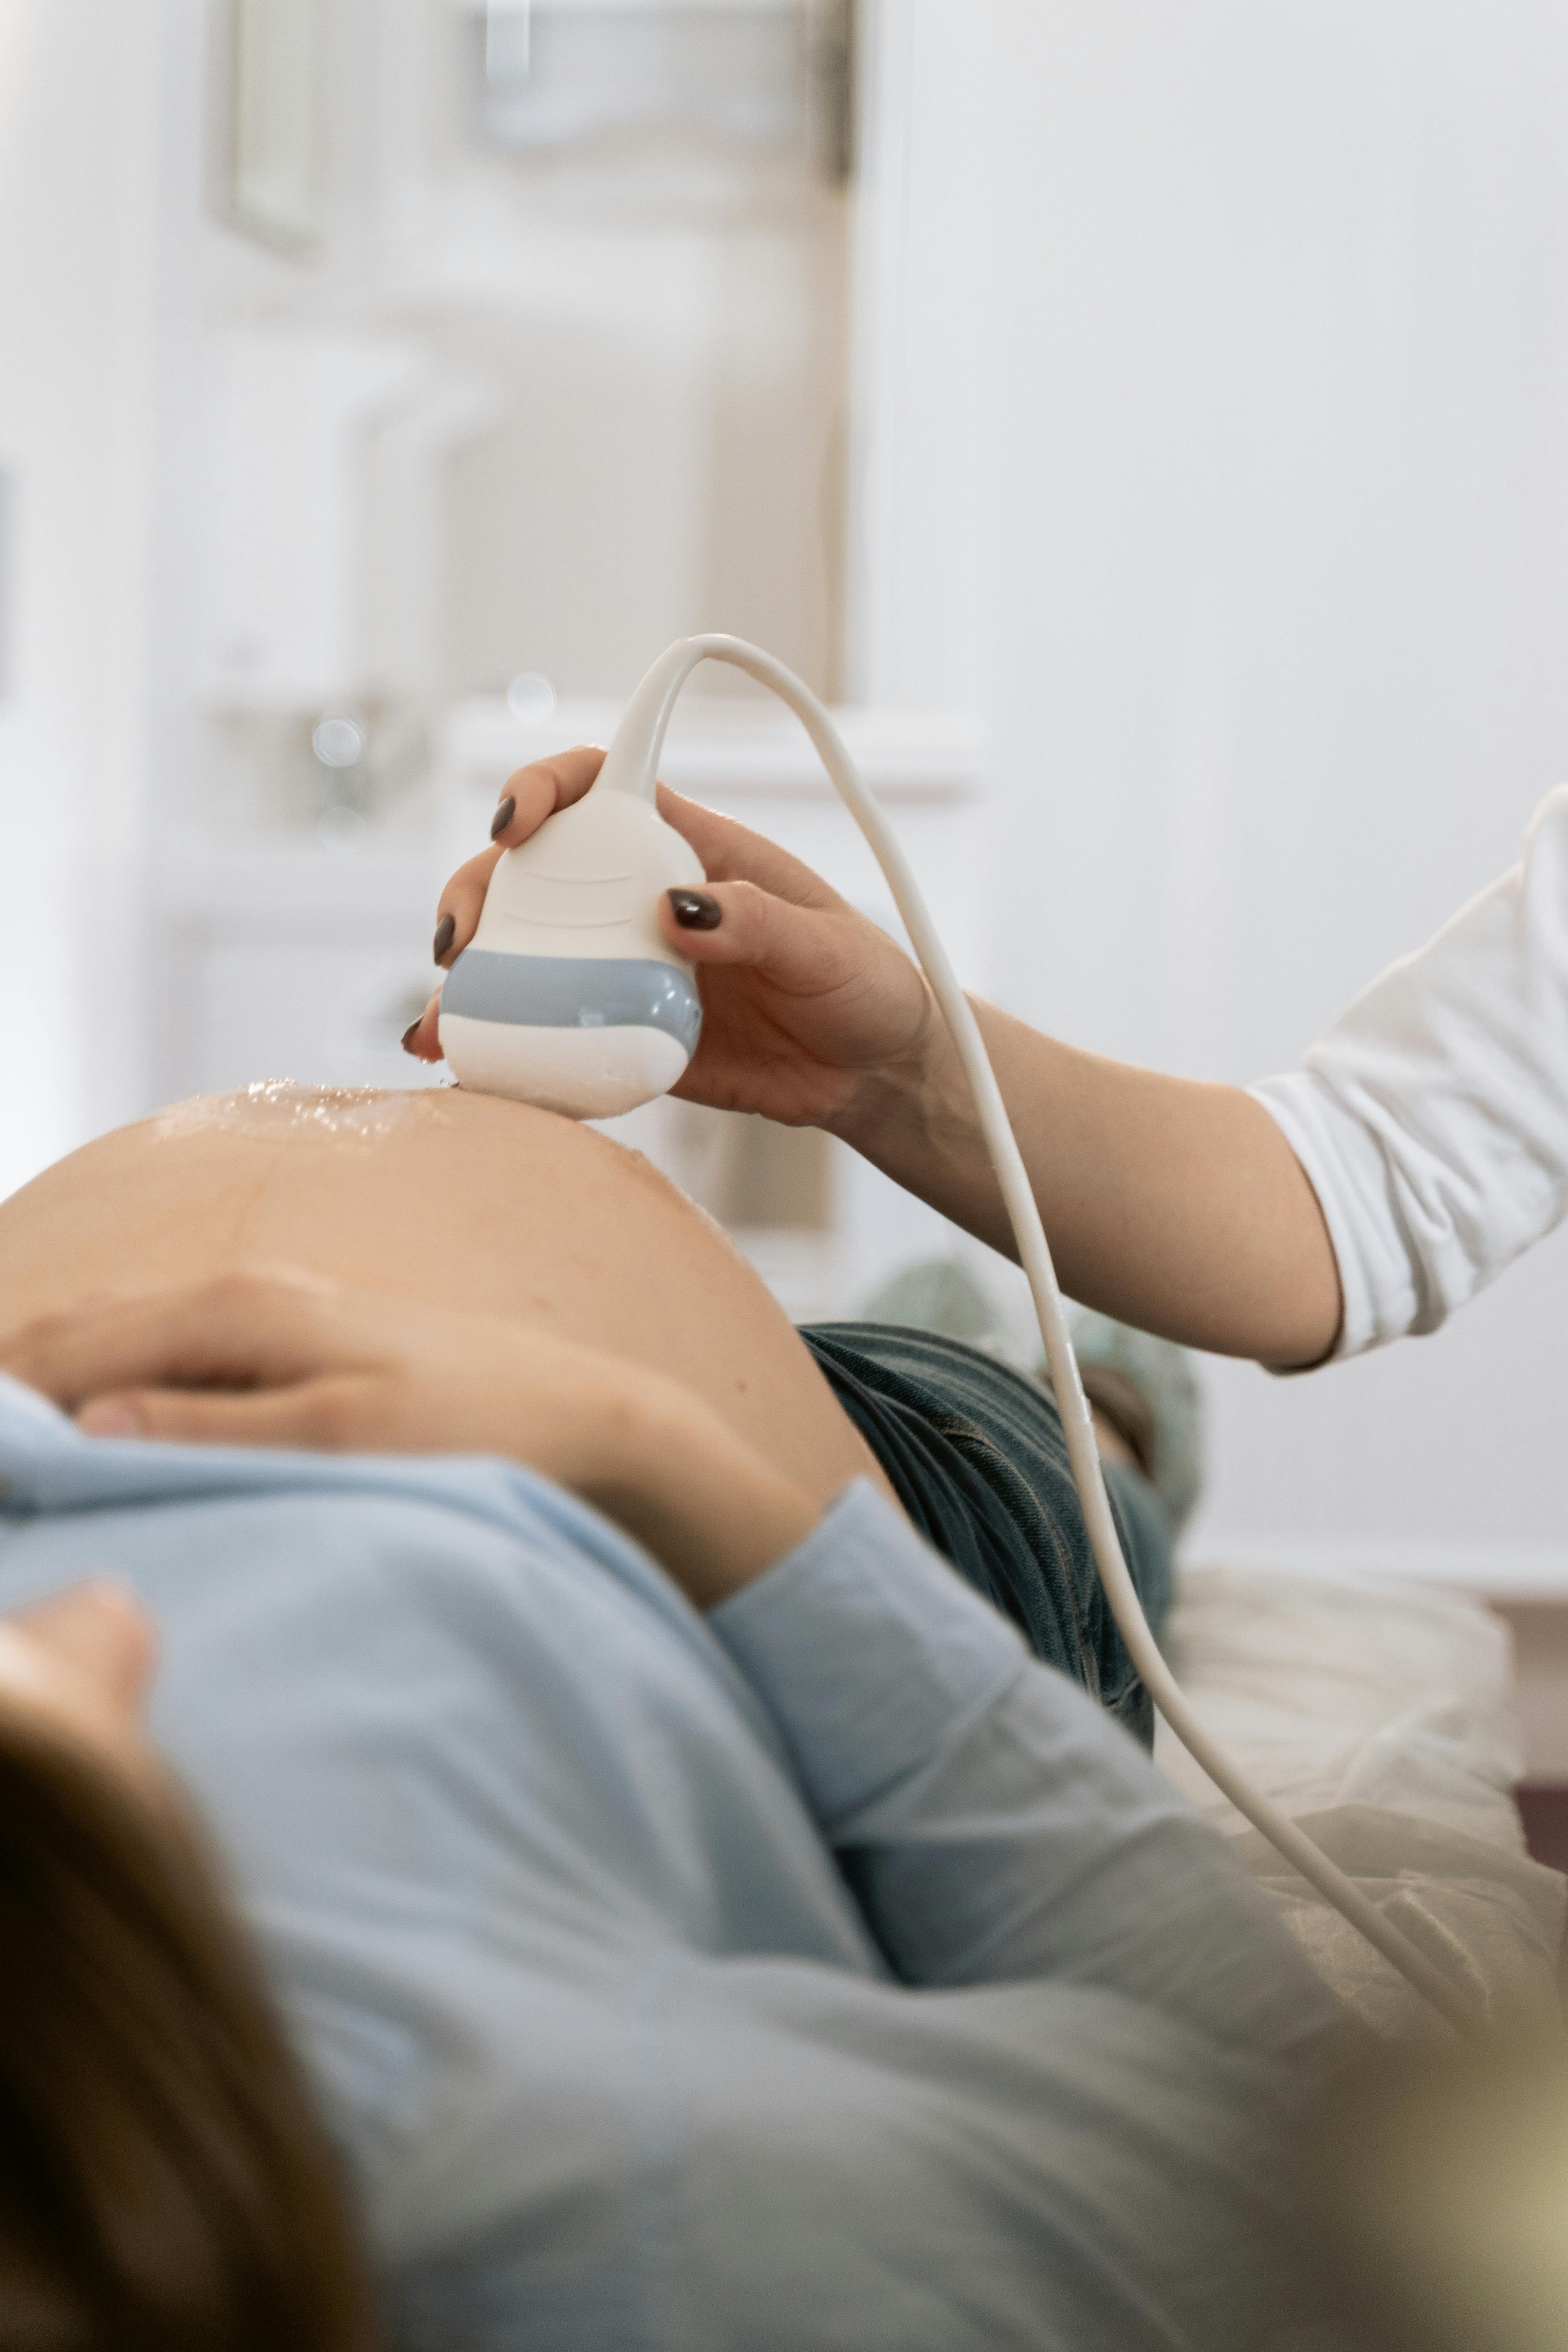 Eine schwangere Frau während einer Ultraschalluntersuchung | Quelle: MART PRODUCTION auf Pexels